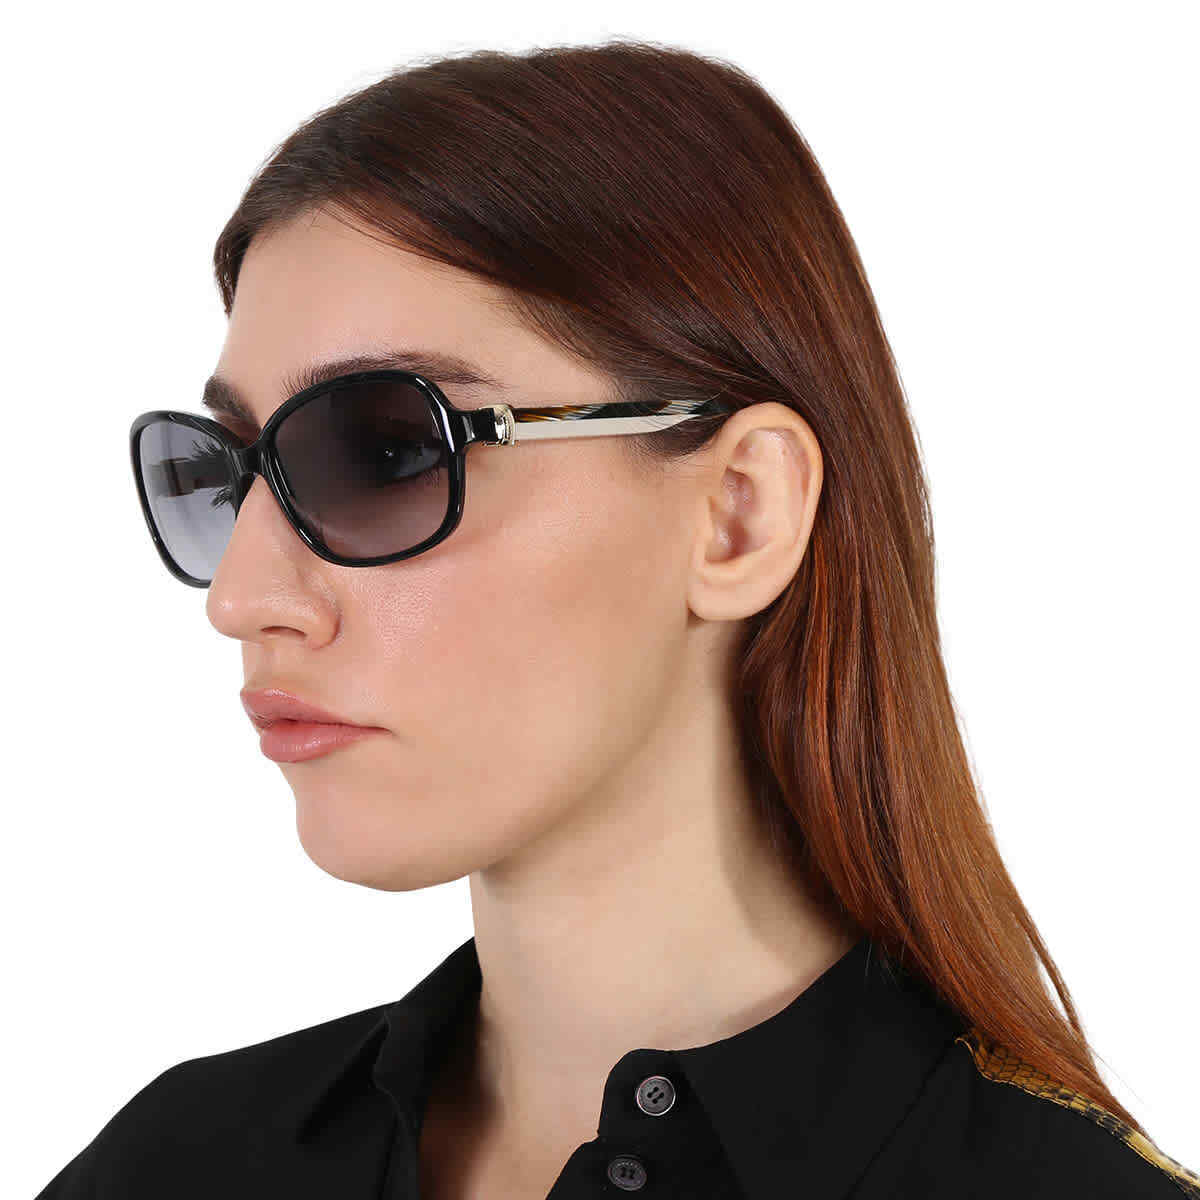 Salvatore Ferragamo SF606S-001-5817 58mm New Sunglasses